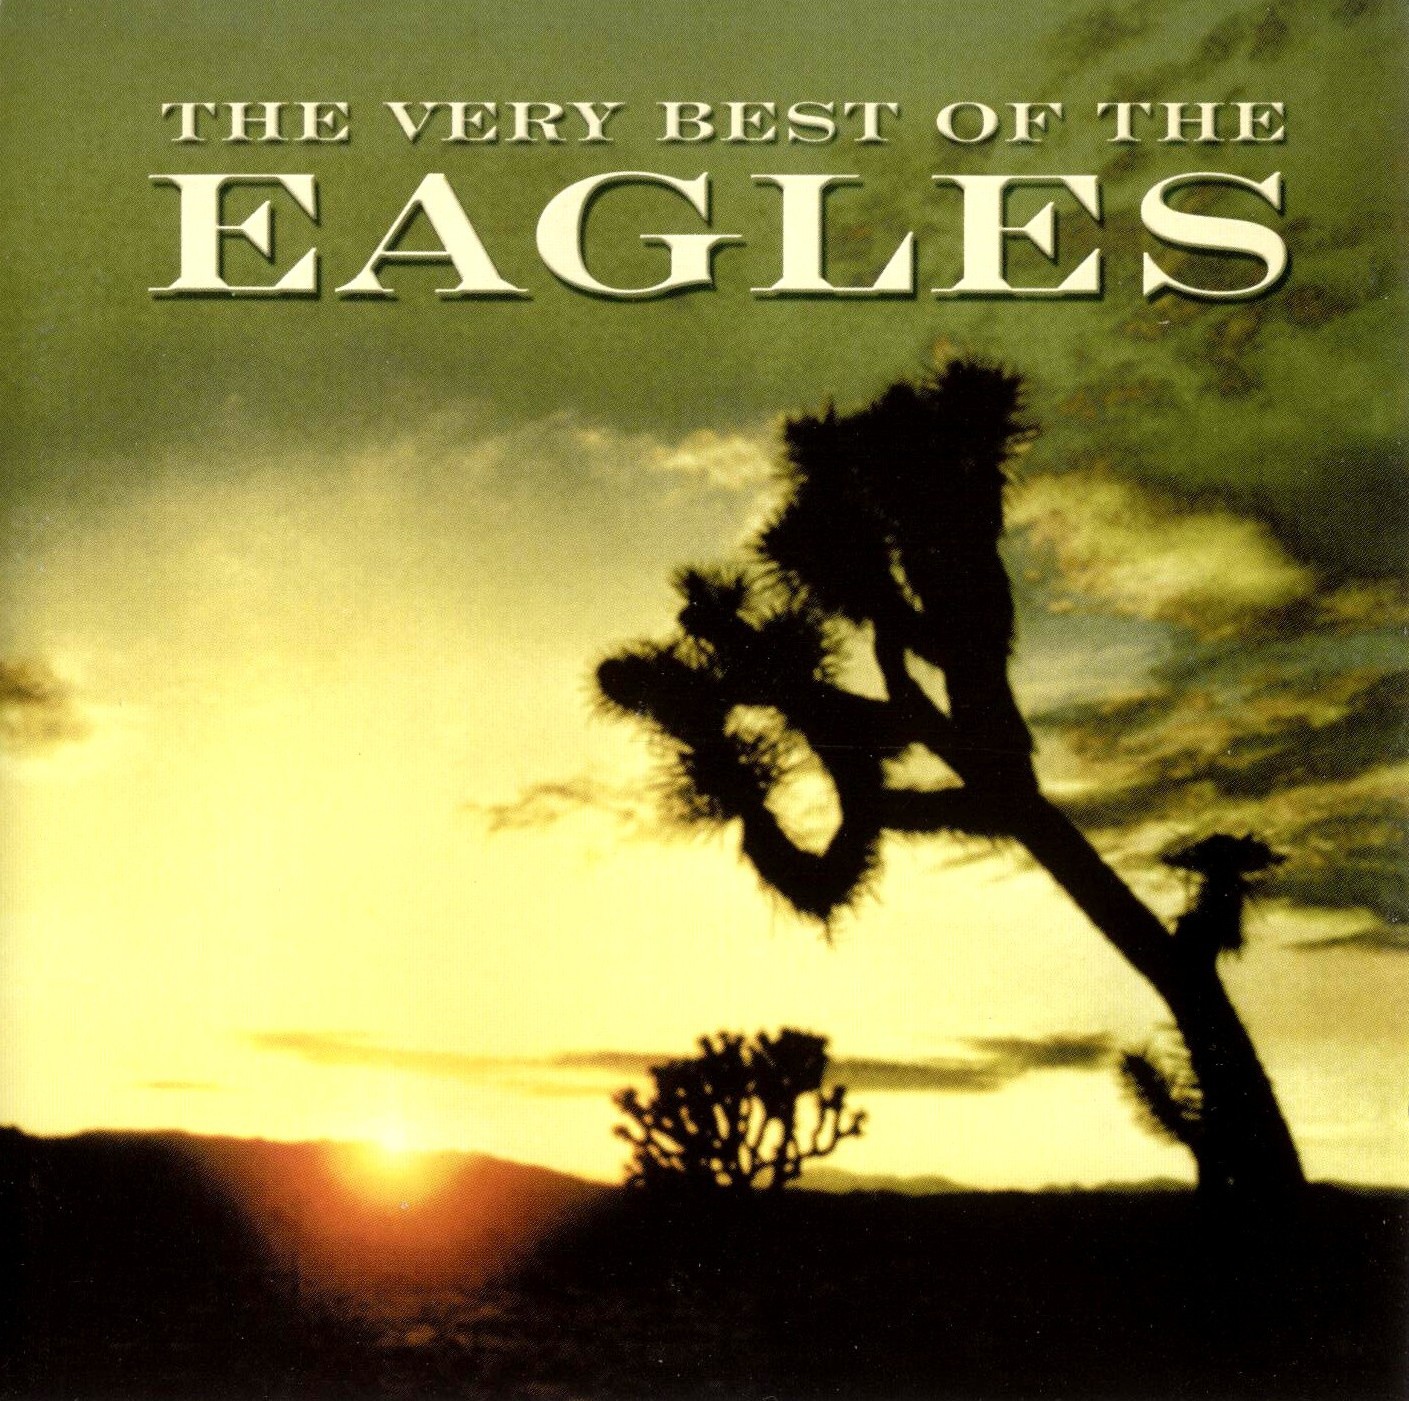 ซีดีเพลง CD 2001 - Eagles - The Very Best Of The Eagles รวมฮิต ชุดนี้คุ้ม,ในราคาพิเศษสุดเพียง159บาท